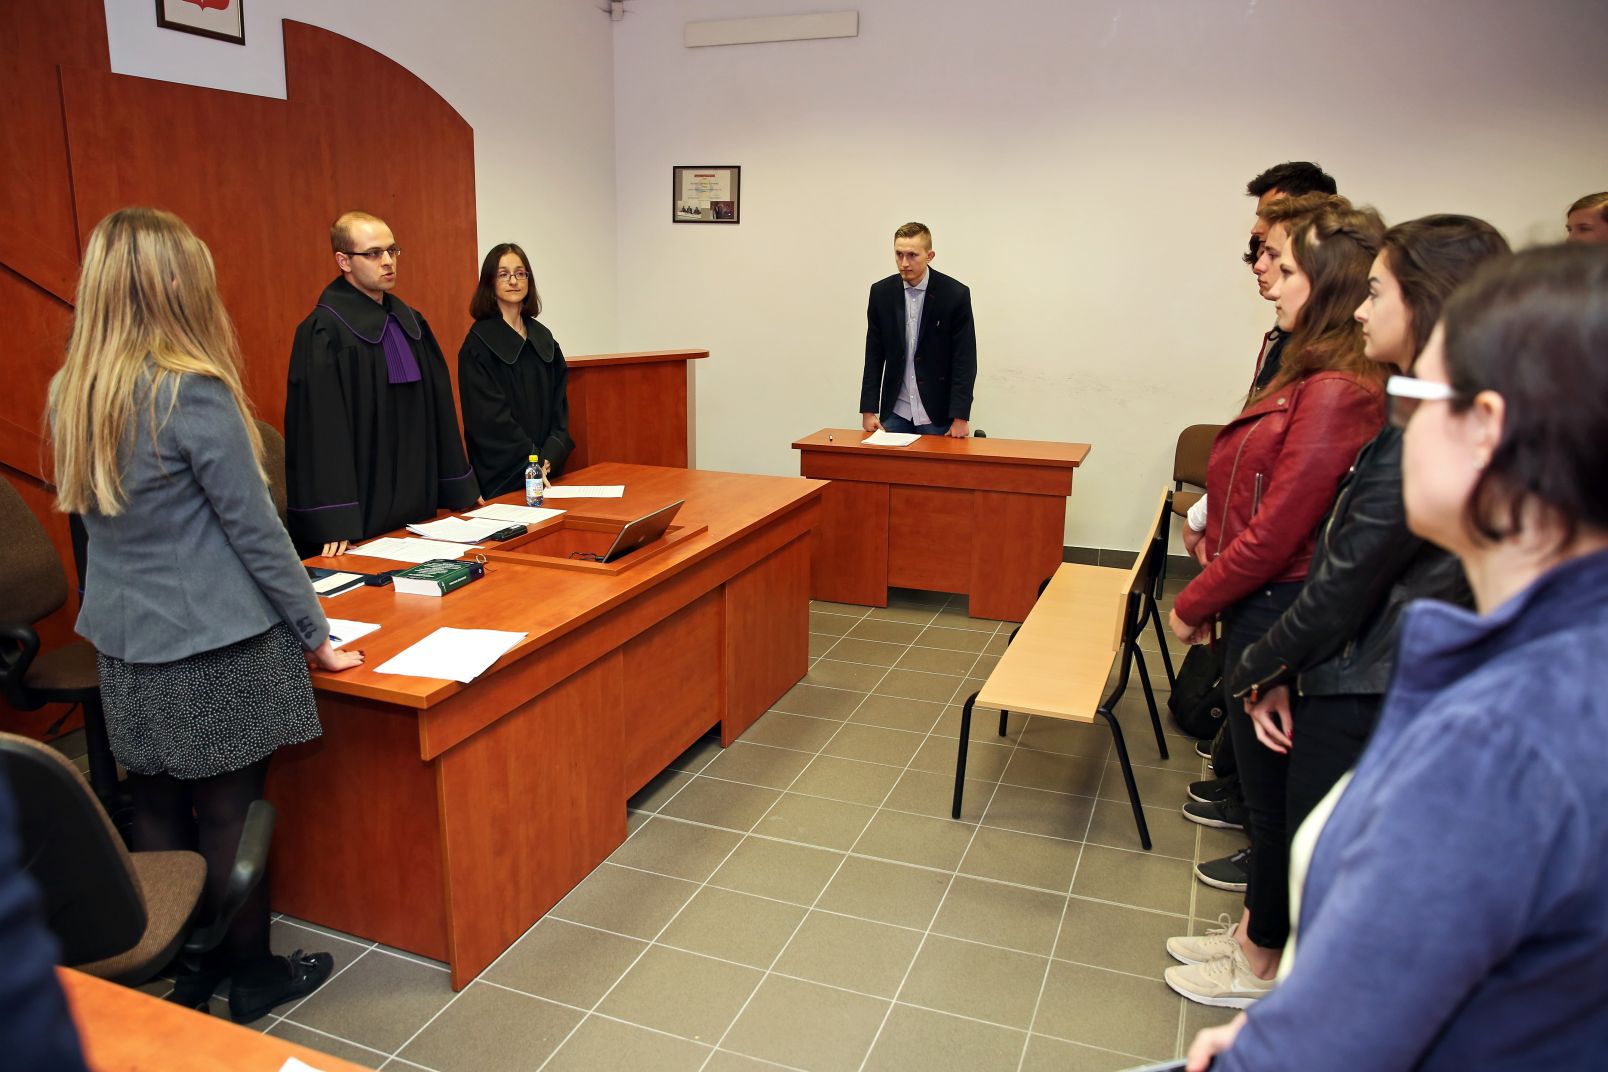 Symulacja rozprawy sądowej podczas Toruńskiego Festiwalu Nauki i Sztuki w 2018 r.